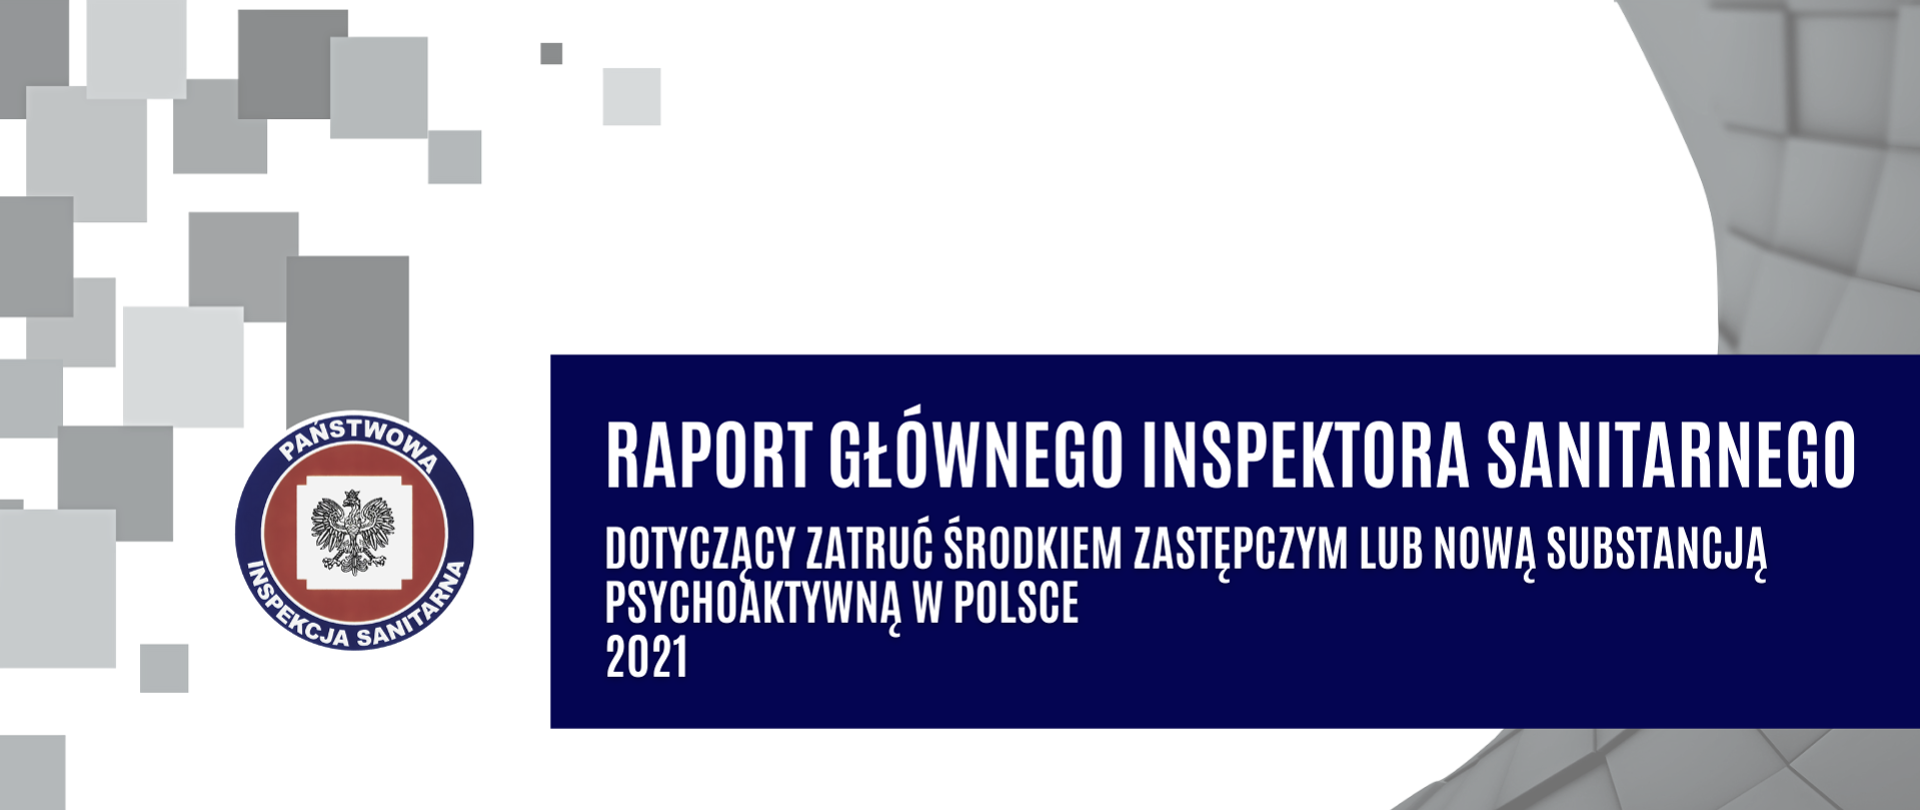 Z lewej strony obrazu widoczne logo PIS . Natomiast po prawej stronie na granatowym tle widnieje napis - Raport Głównego Inspektora Sanitarnego dotyczący zatruć środkiem zastęp[czym lub nową substancją psychoaktywną w Polsce w 2021r.